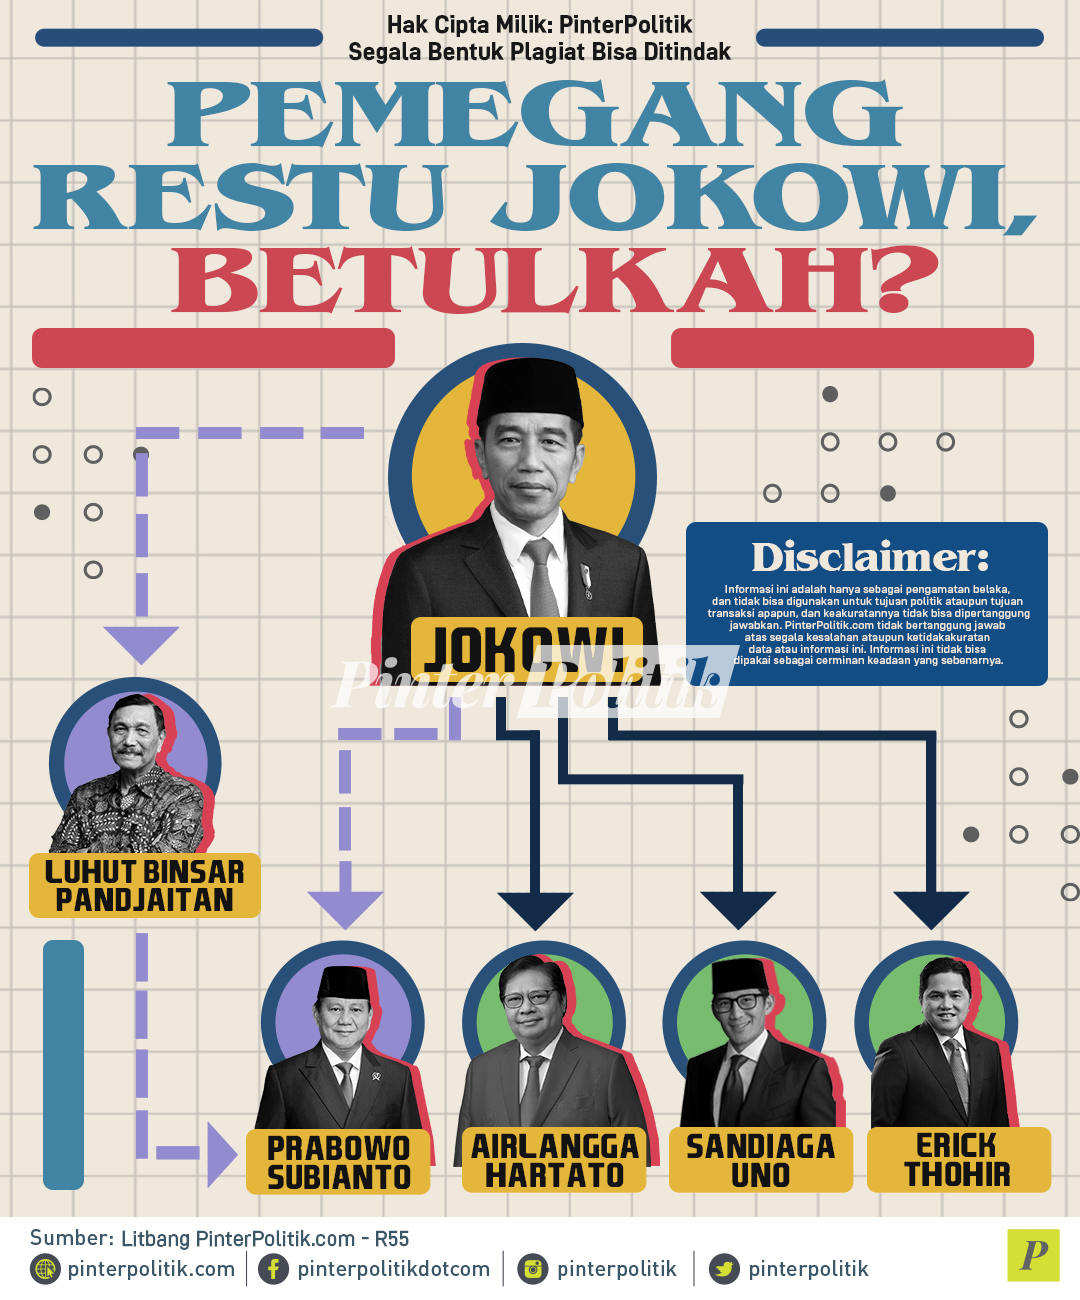 Pemegang Restu Jokowi Bertulkah